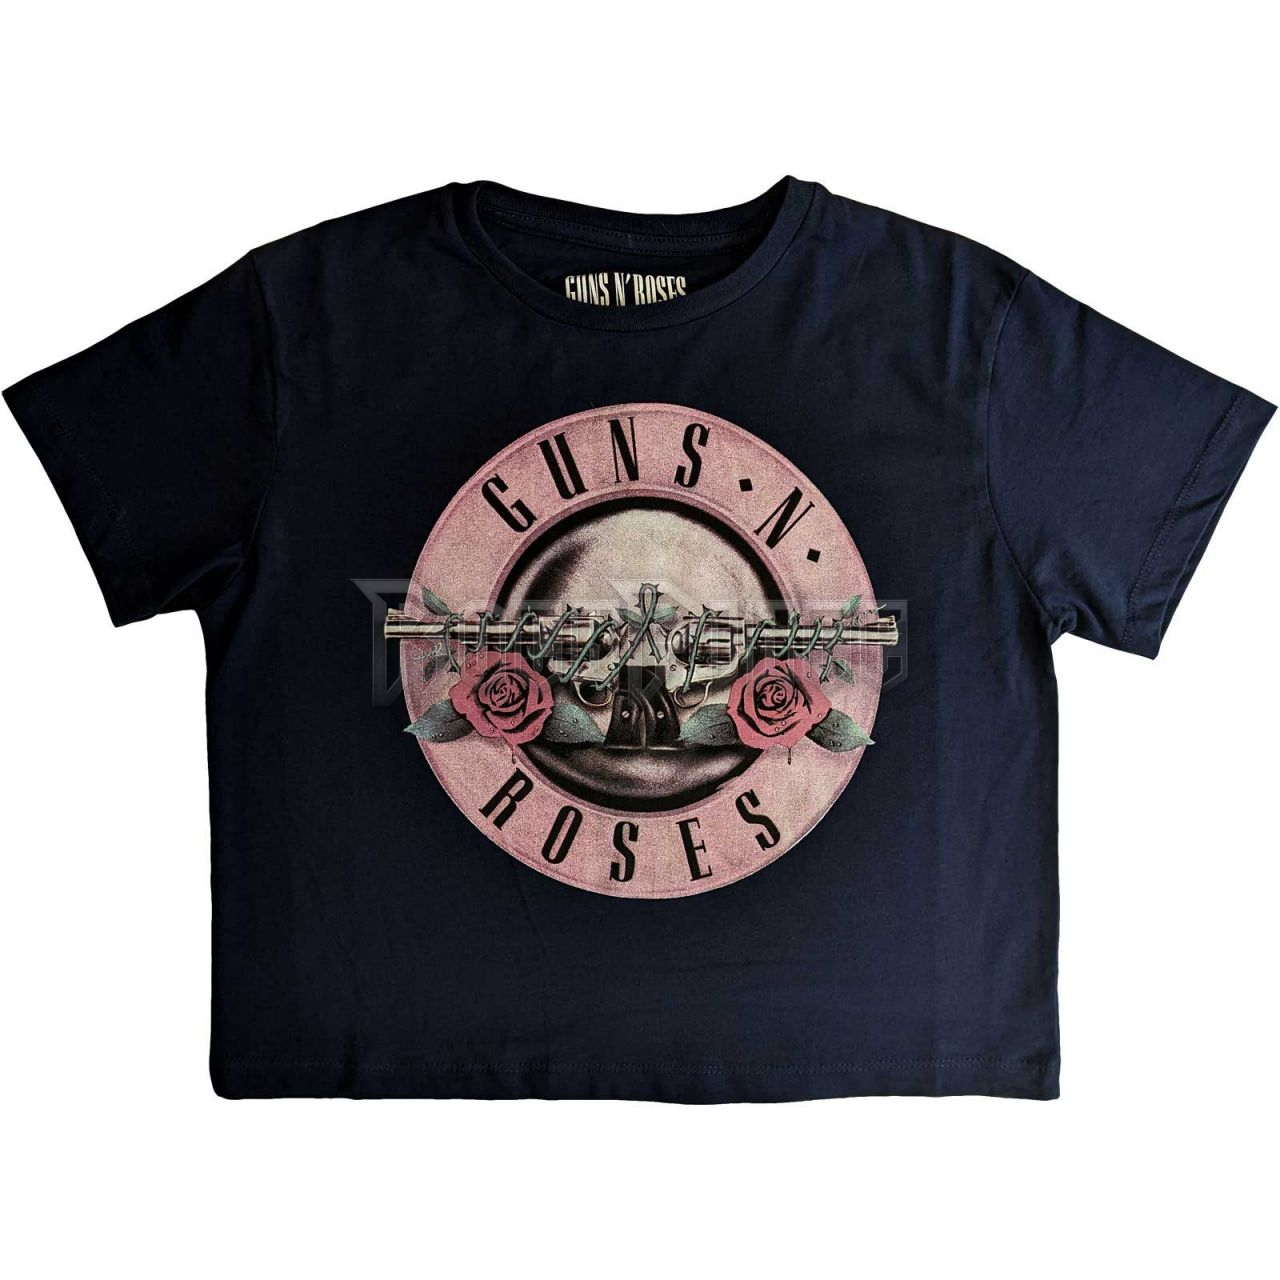 Guns N' Roses - Classic Logo - női crop top - GNRCT04LN